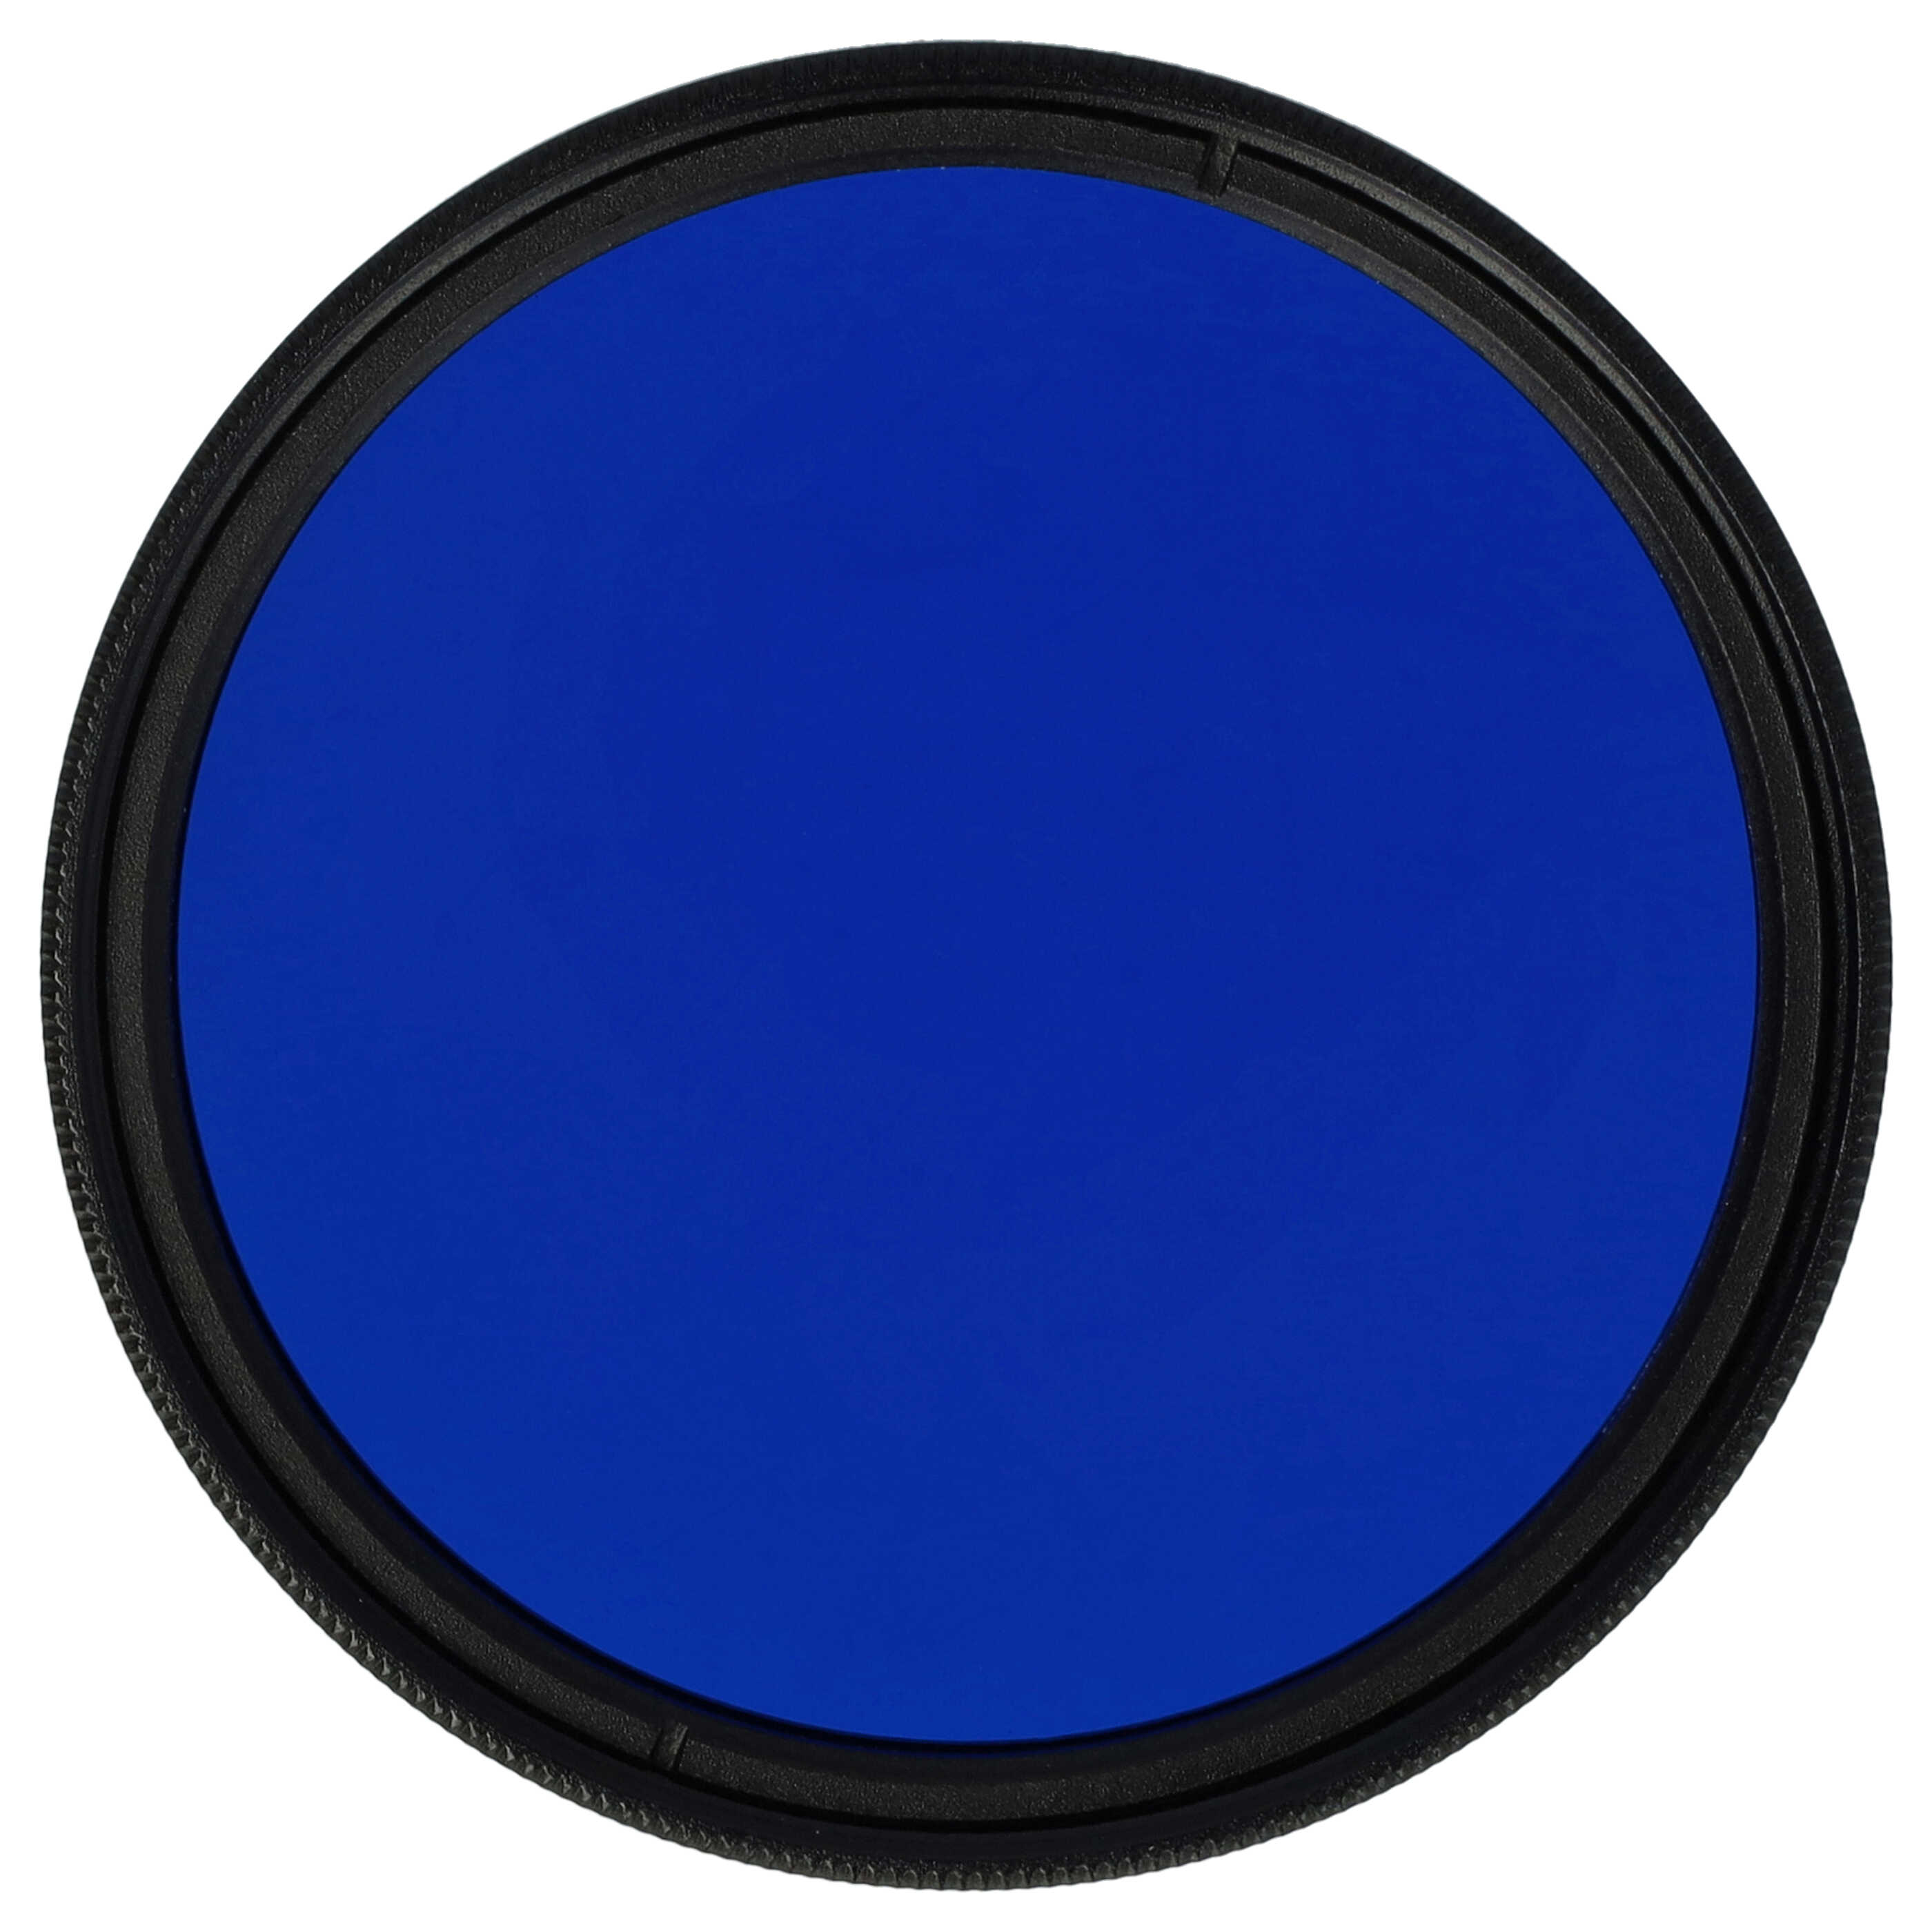 Filtro colorato per obiettivi fotocamera con filettatura da 49 mm - filtro blu